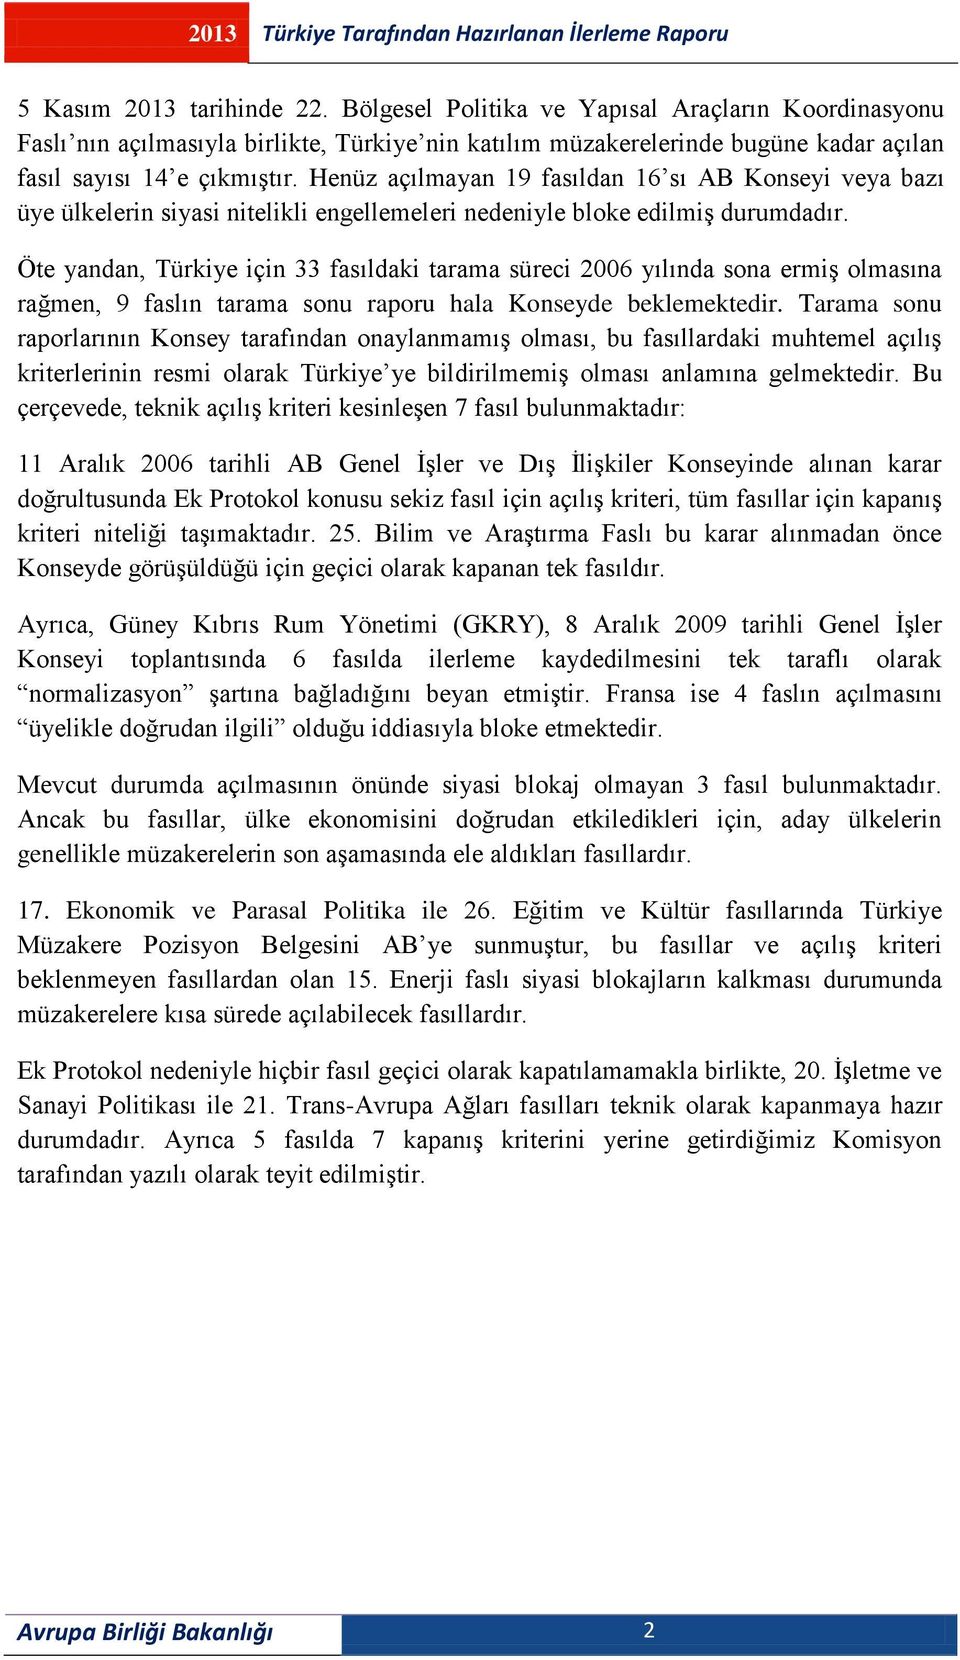 Öte yandan, Türkiye için 33 fasıldaki tarama süreci 2006 yılında sona ermiş olmasına rağmen, 9 faslın tarama sonu raporu hala Konseyde beklemektedir.